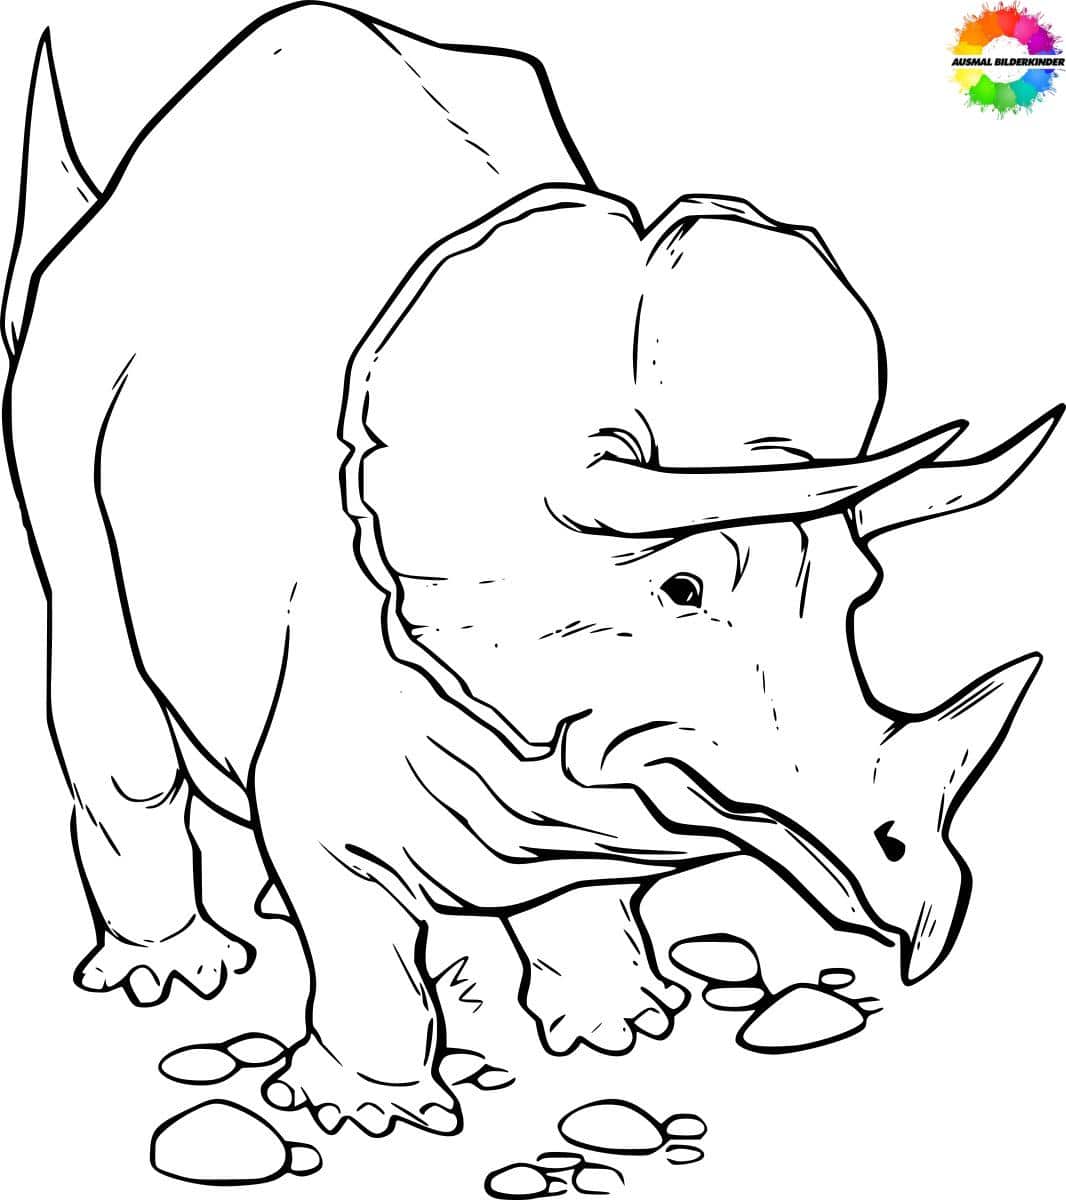 ausmalbilderkinder.de – Ausmalbilder Triceratops 26